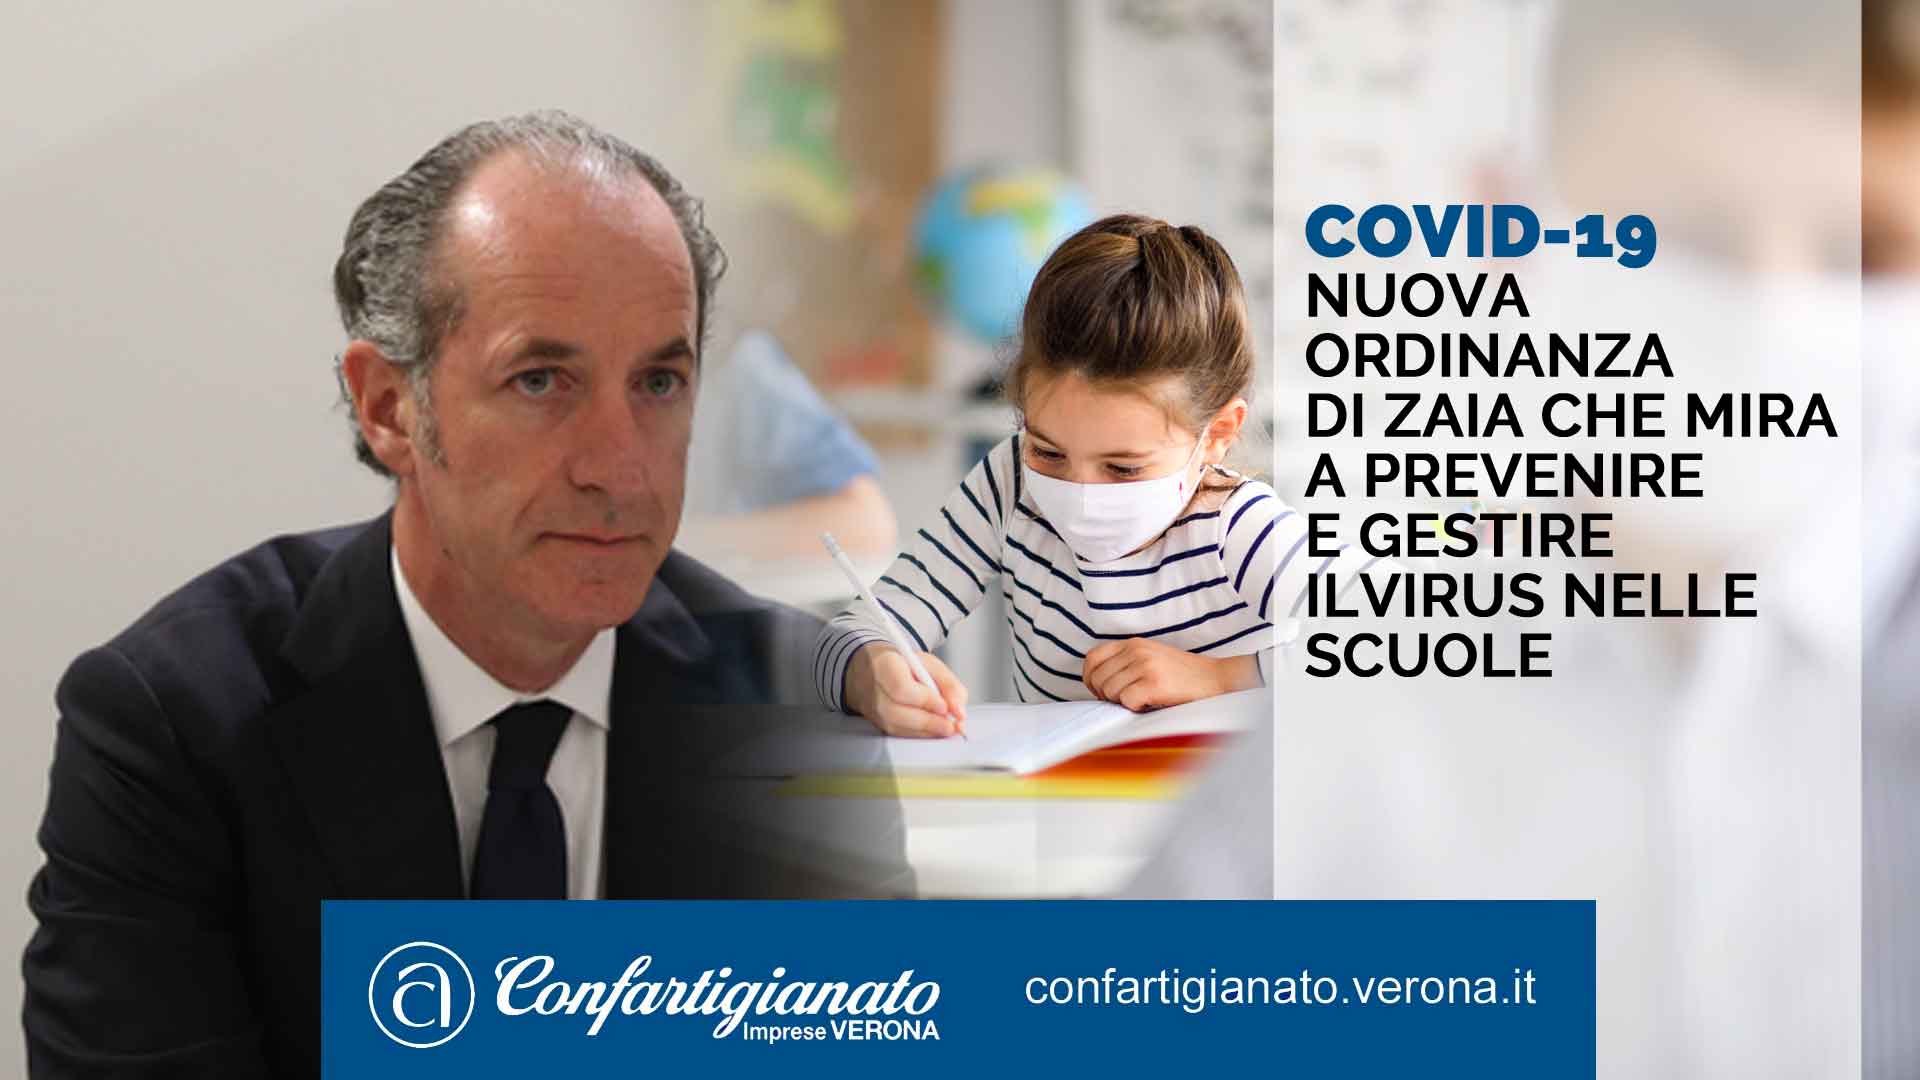 COVID-19 Nuova ordinanza dI Zaia che mira a prevenire e gestire ilvirus nelle scuole